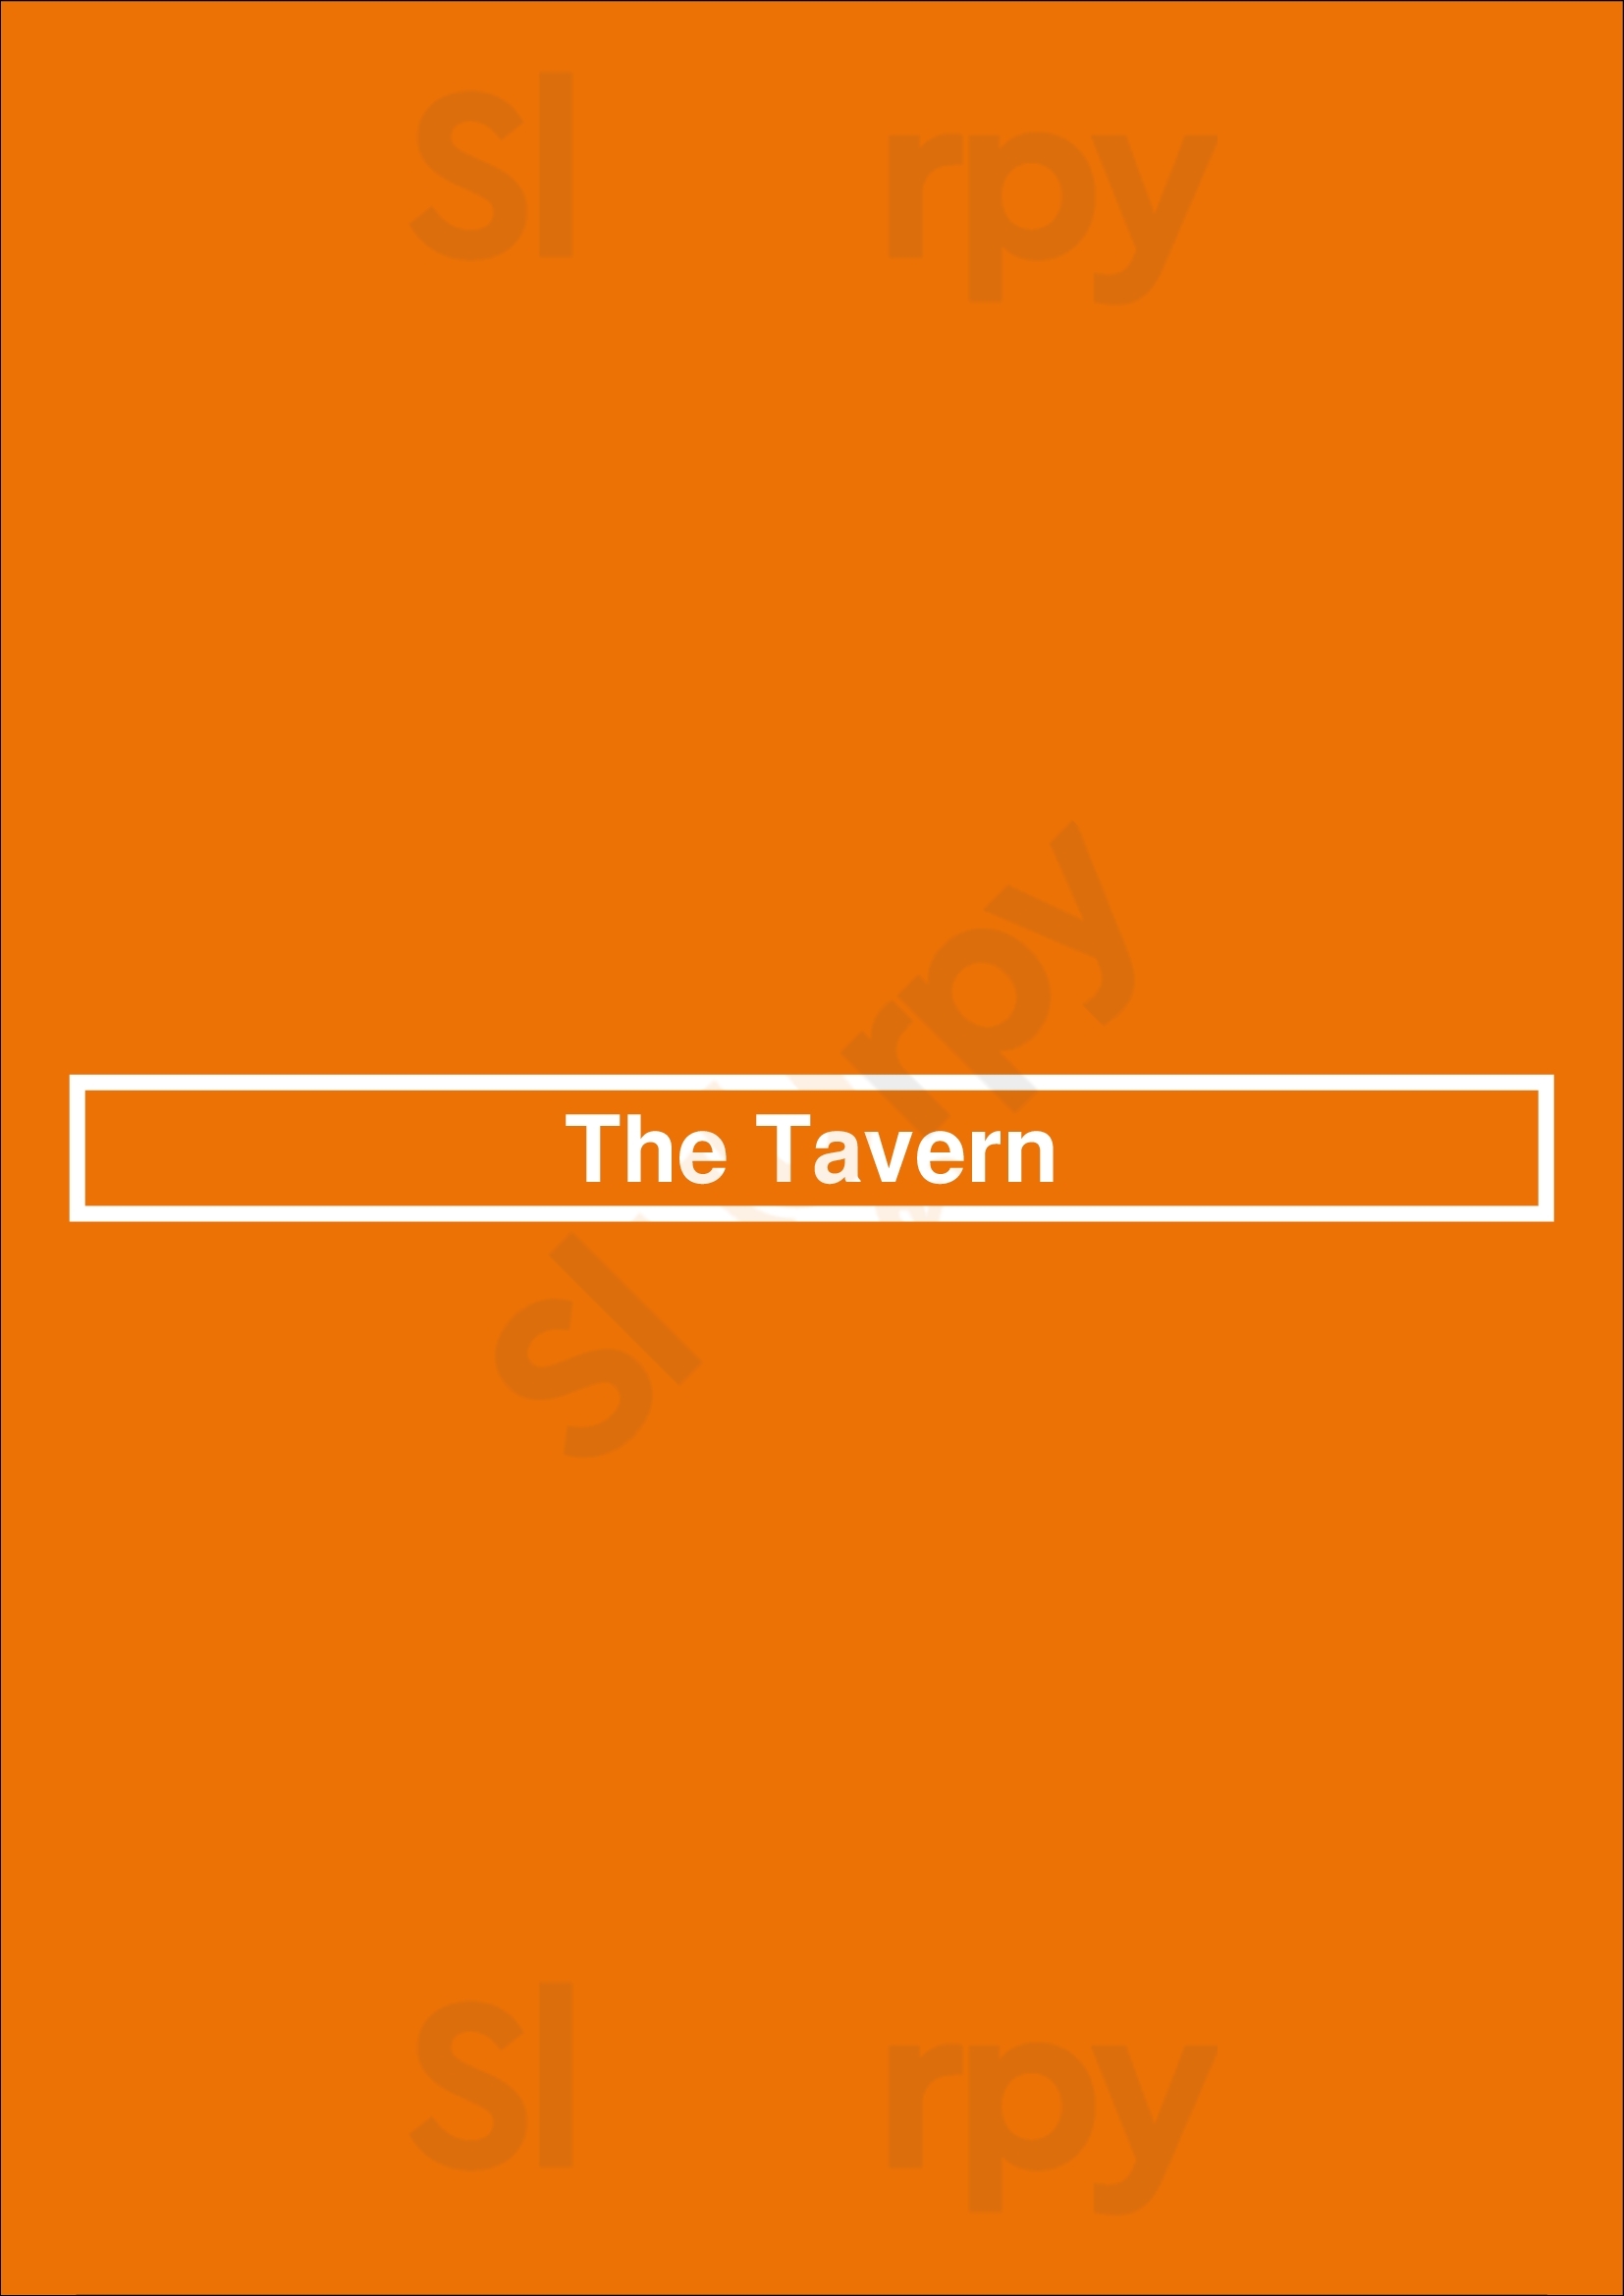 The Wine Bar (tavern) Phoenix Menu - 1